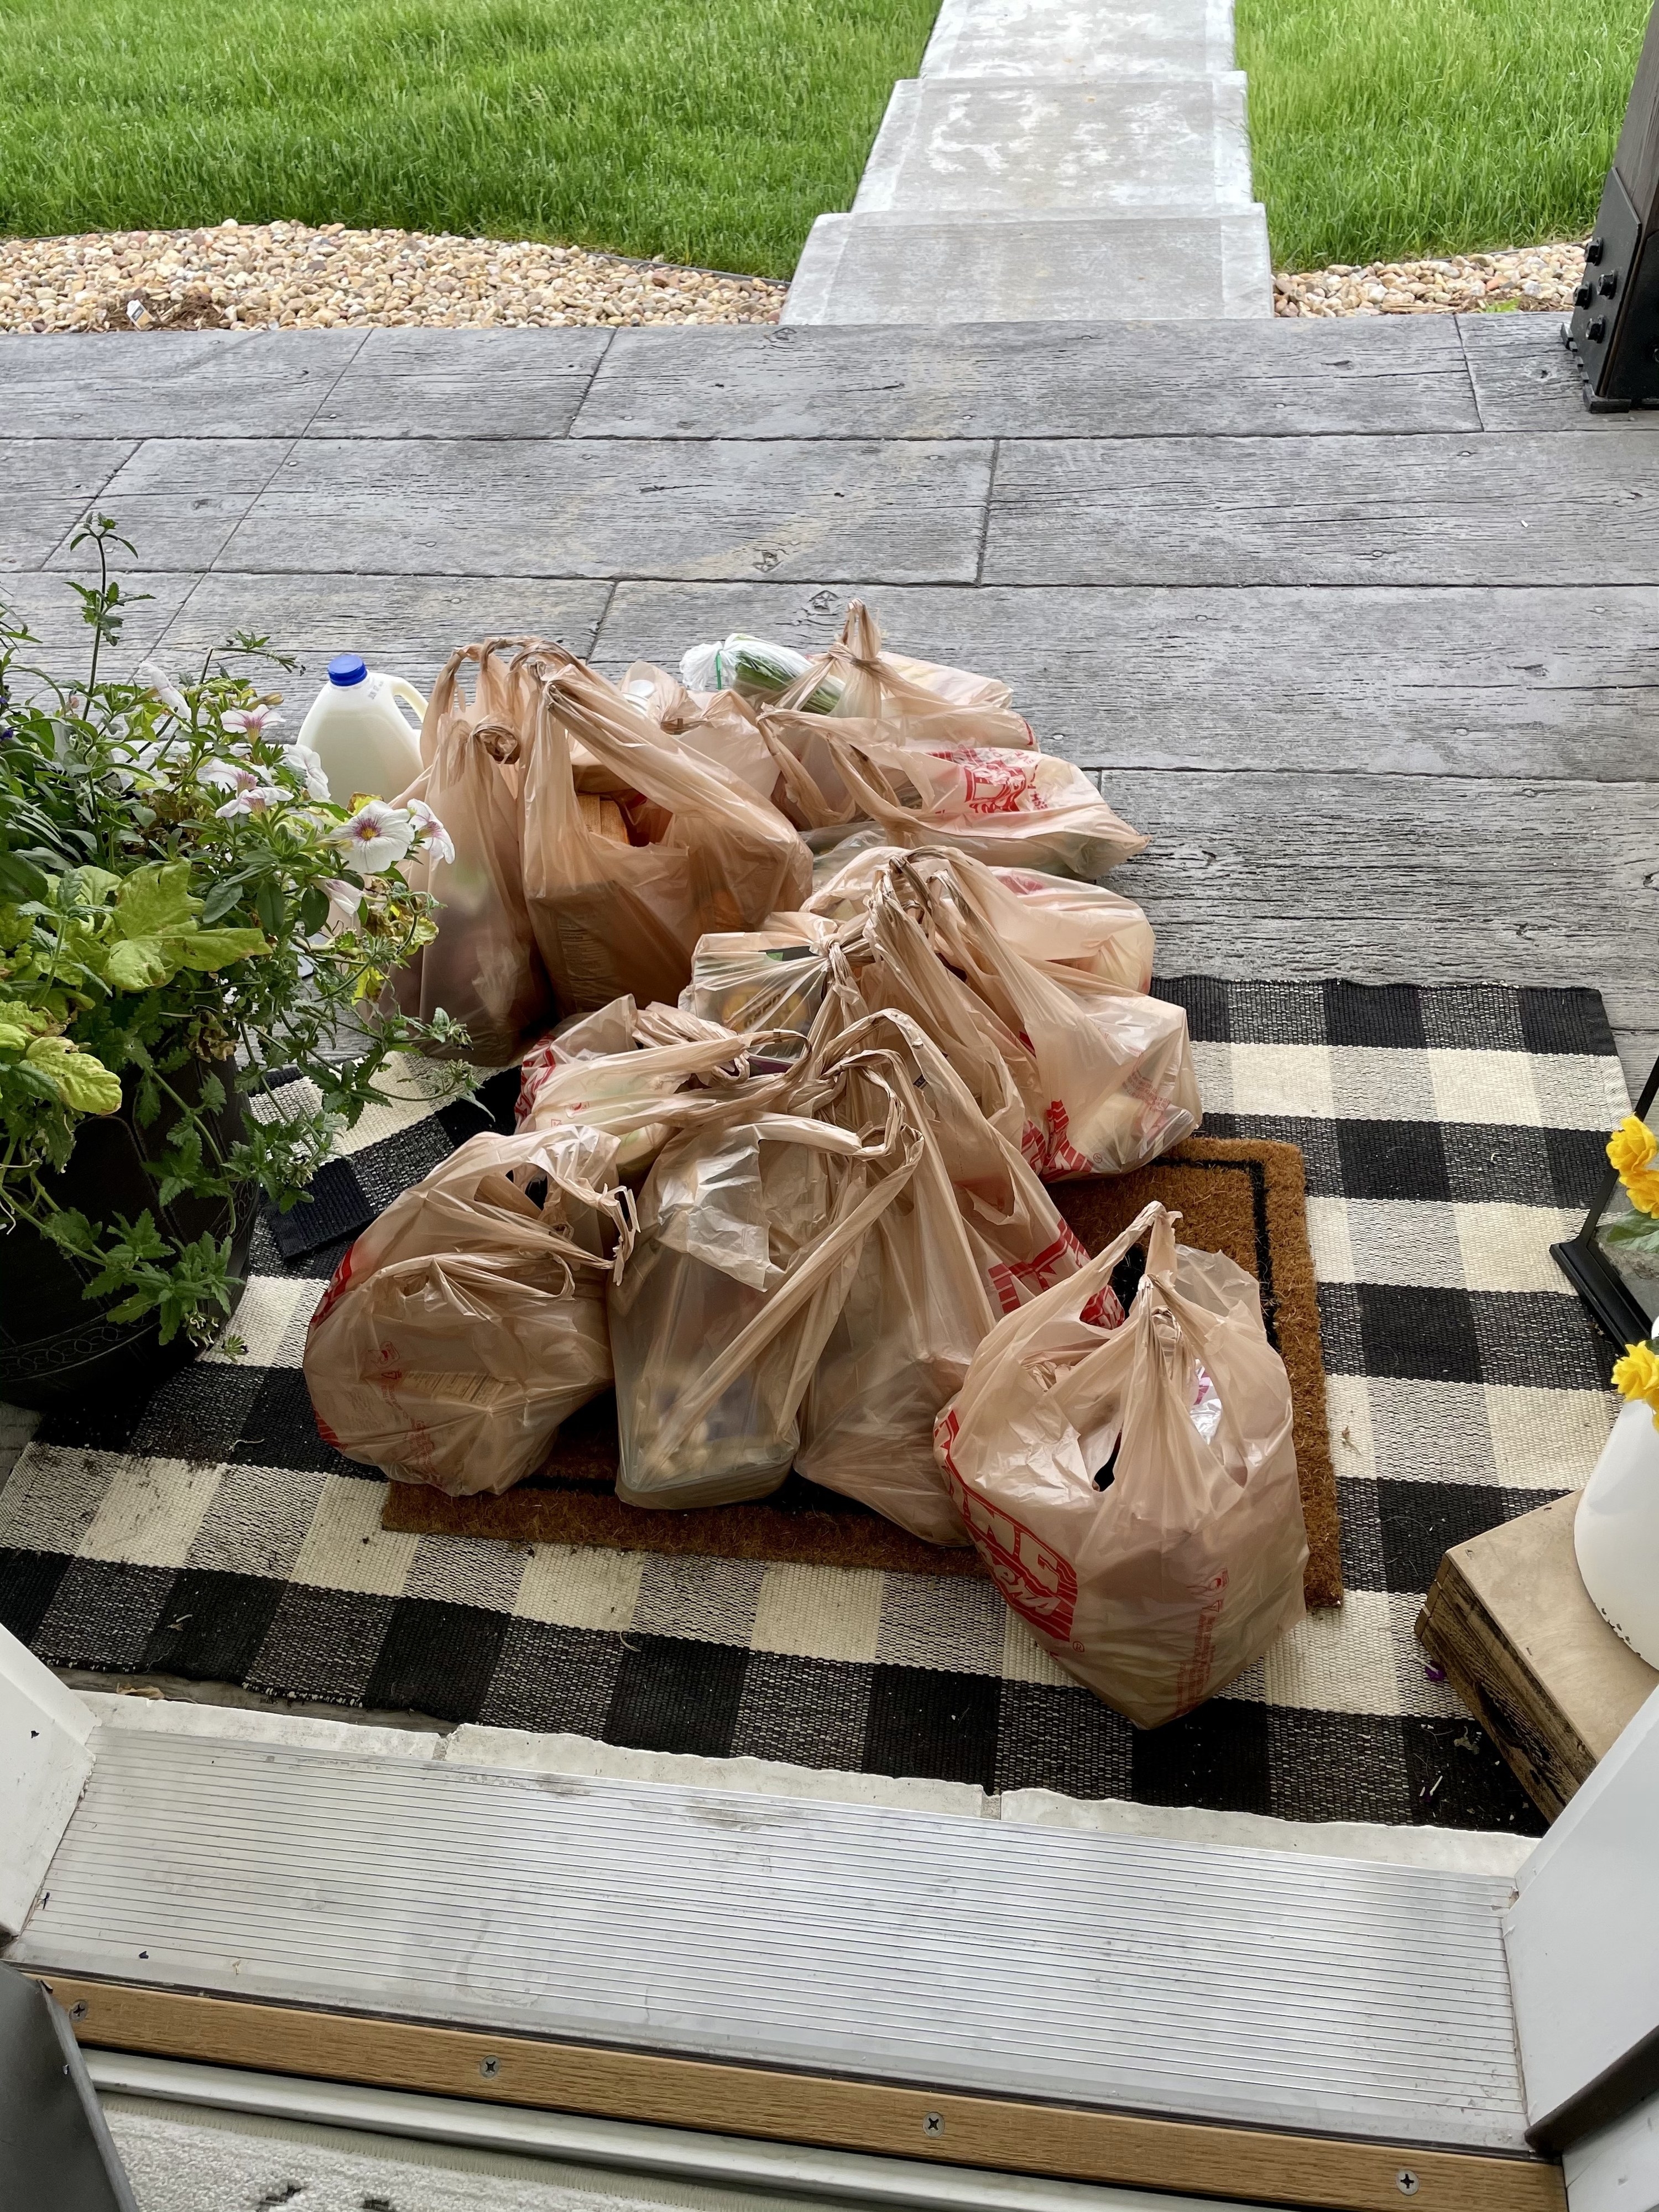 Delivered groceries on a doorstep